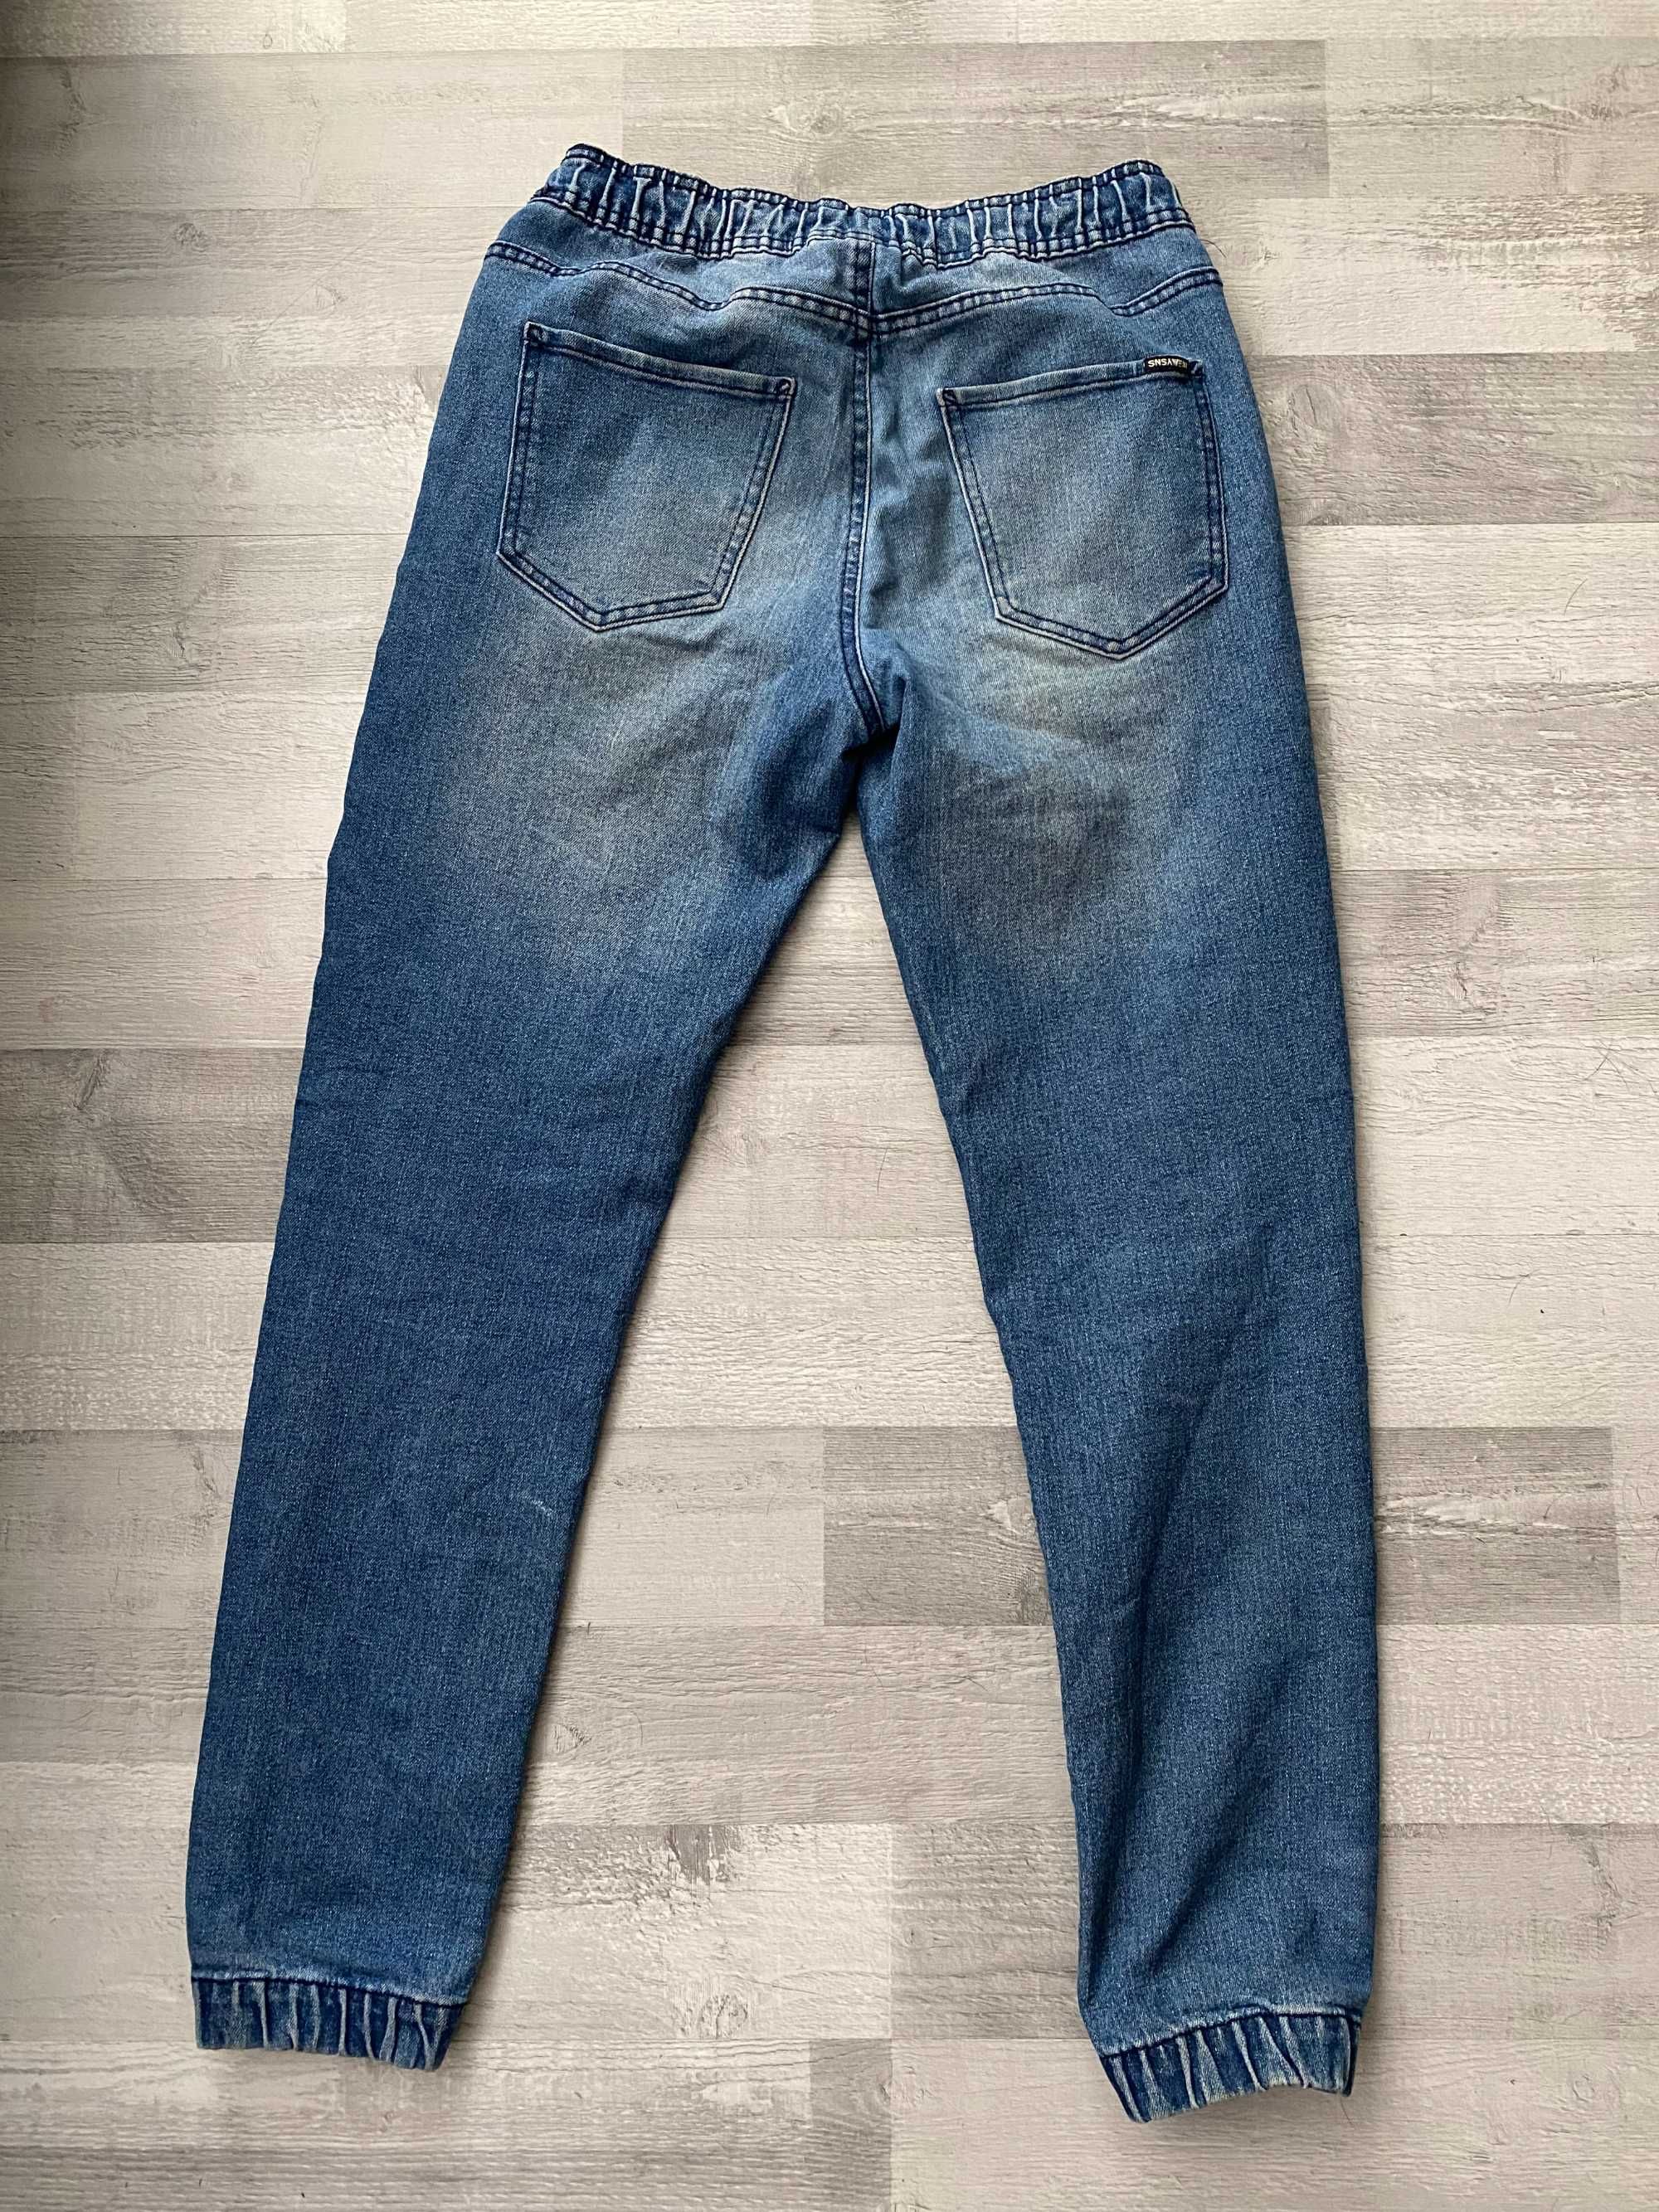 Spodnie męskie dżinsy jeansy 28 ze sznurkiem wiązane dżinsowe ściągane